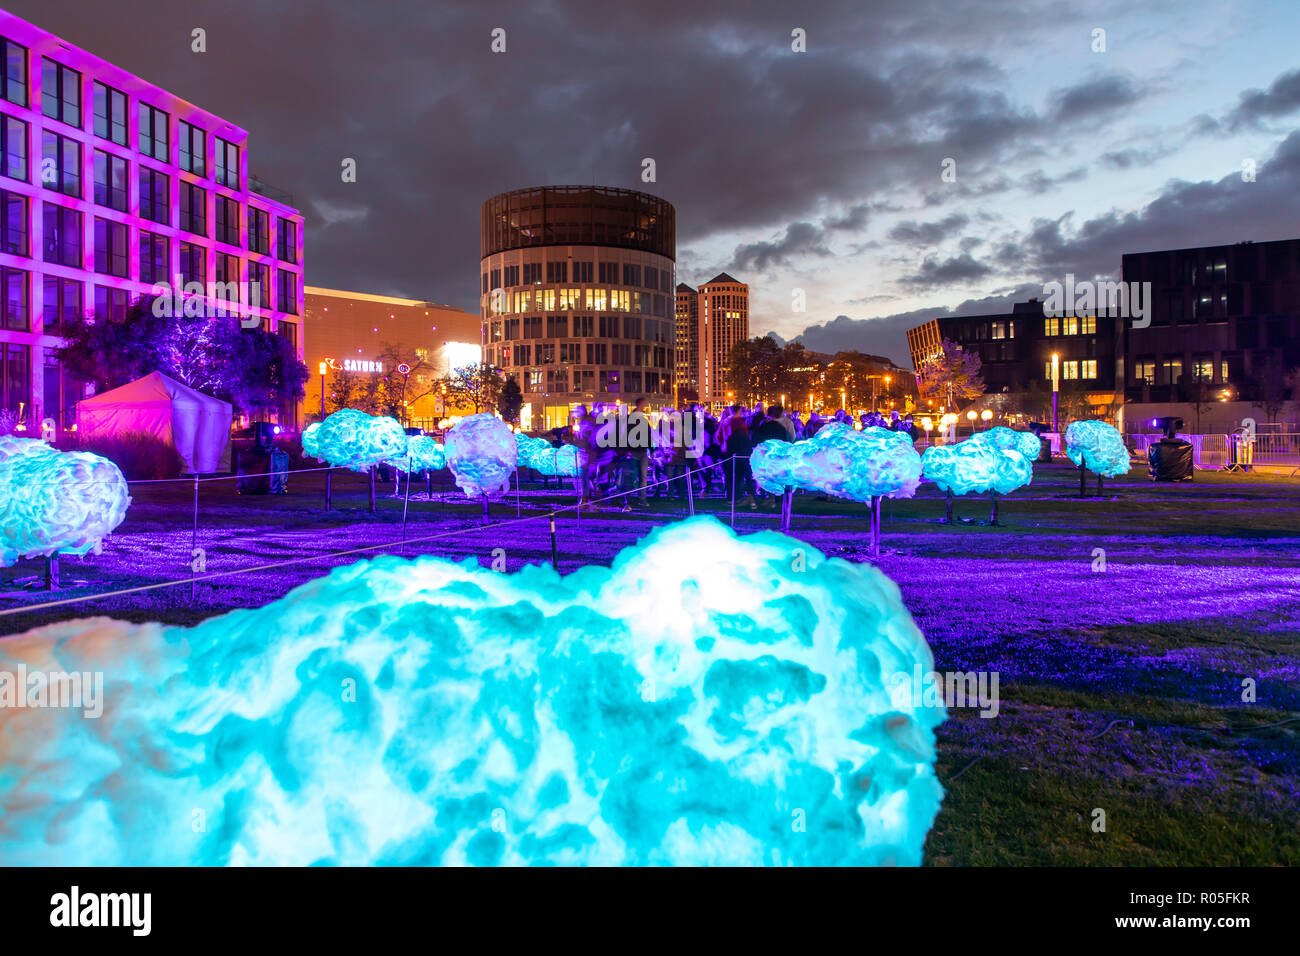 Essen Festival di Luce, luce installazioni artistiche nel centro della città di Essen, suoni del cielo arte luce sul Berliner Platz, Germania Foto Stock